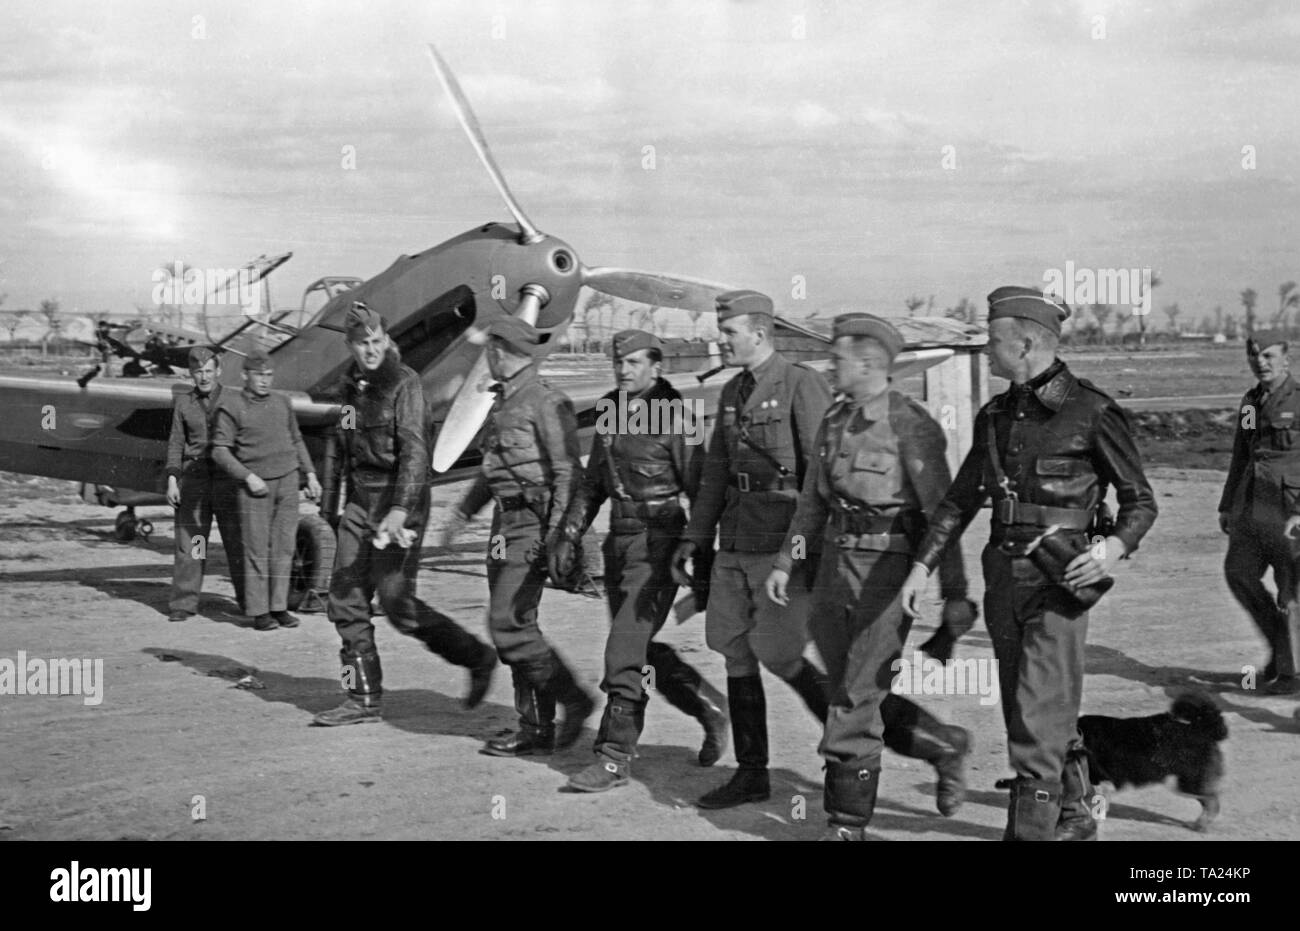 Foto von einer Gruppe von Kampfpiloten der Legion Condor, die Bekämpfung der Gruppe 88, während marschieren die Ready-to-use Messerschmitt Bf 109 Kämpfer (im Hintergrund) auf einem Flugplatz in Spanien im Jahr 1939. Der Mund der Maschinengewehr ist in der hohlen propellor Nasenkonus sichtbar. Stockfoto